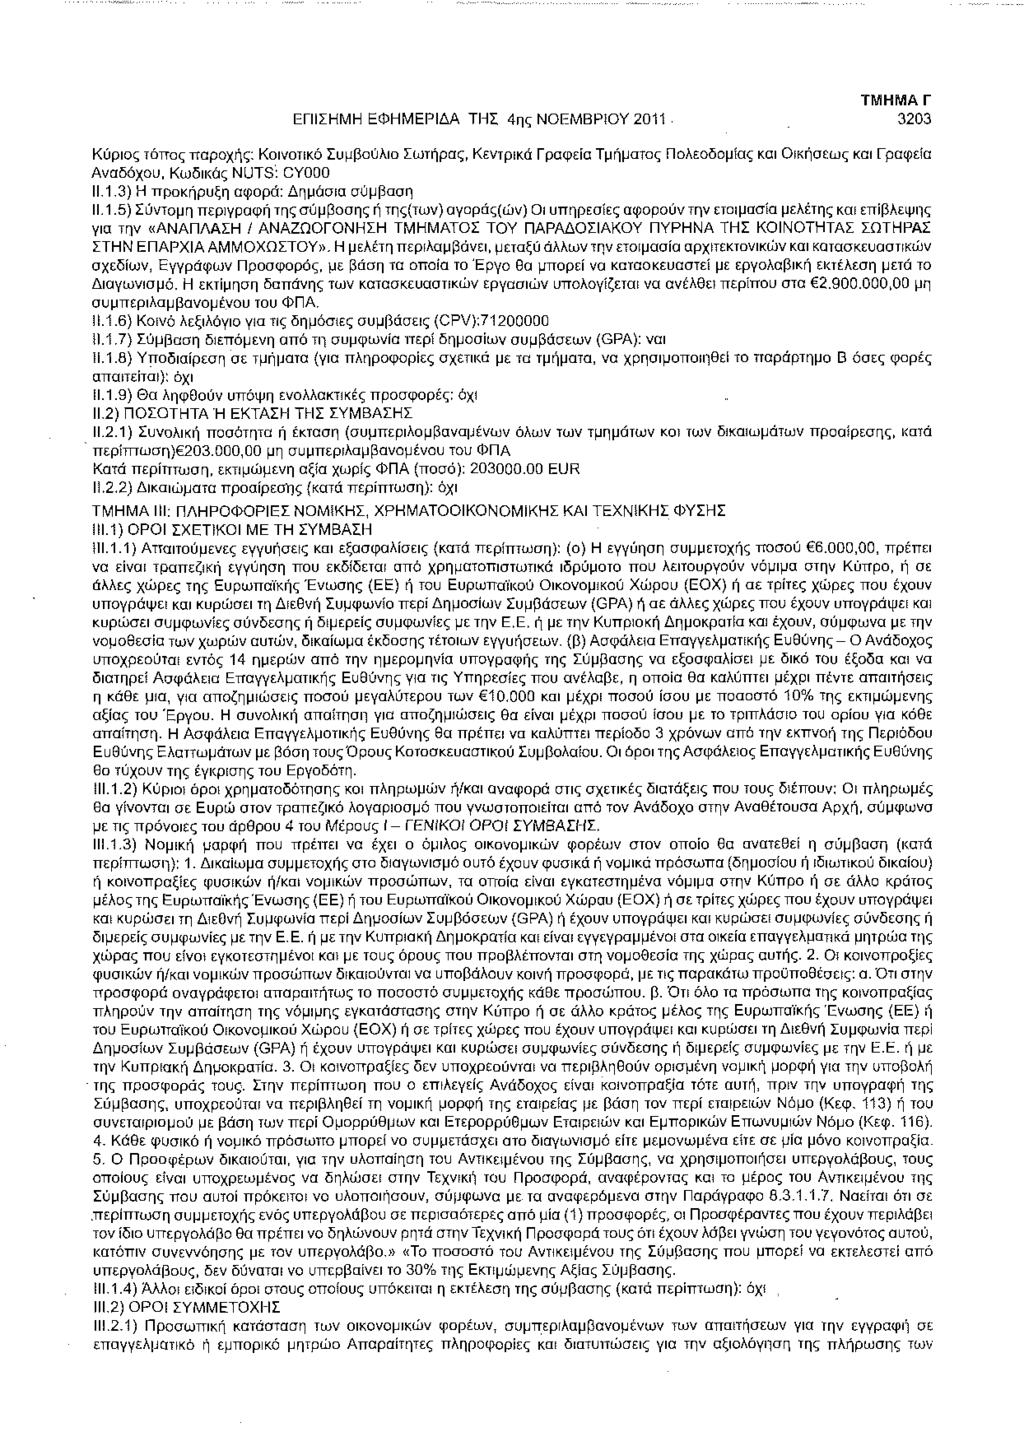 ΕΠΙΣΗΜΗ ΕΦΗΜΕΡΙΔΑ ΤΗΣ 4ης ΝΟΕΜΒΡίΟΥ 2011 3203 Κύριος τόπος παροχής: Κοινοτικό Συμβούλιο Σωτήρας, Κεντρικά Γραφείο Τμήματος Πολεοδομίας κσι Οικήσεως και Γραφεία Αναδόχου, Κωδικός NUTS: CYO0O 11.1.3) Η προκήρυξη αφορά: Δημόσια σύμβαση 11.